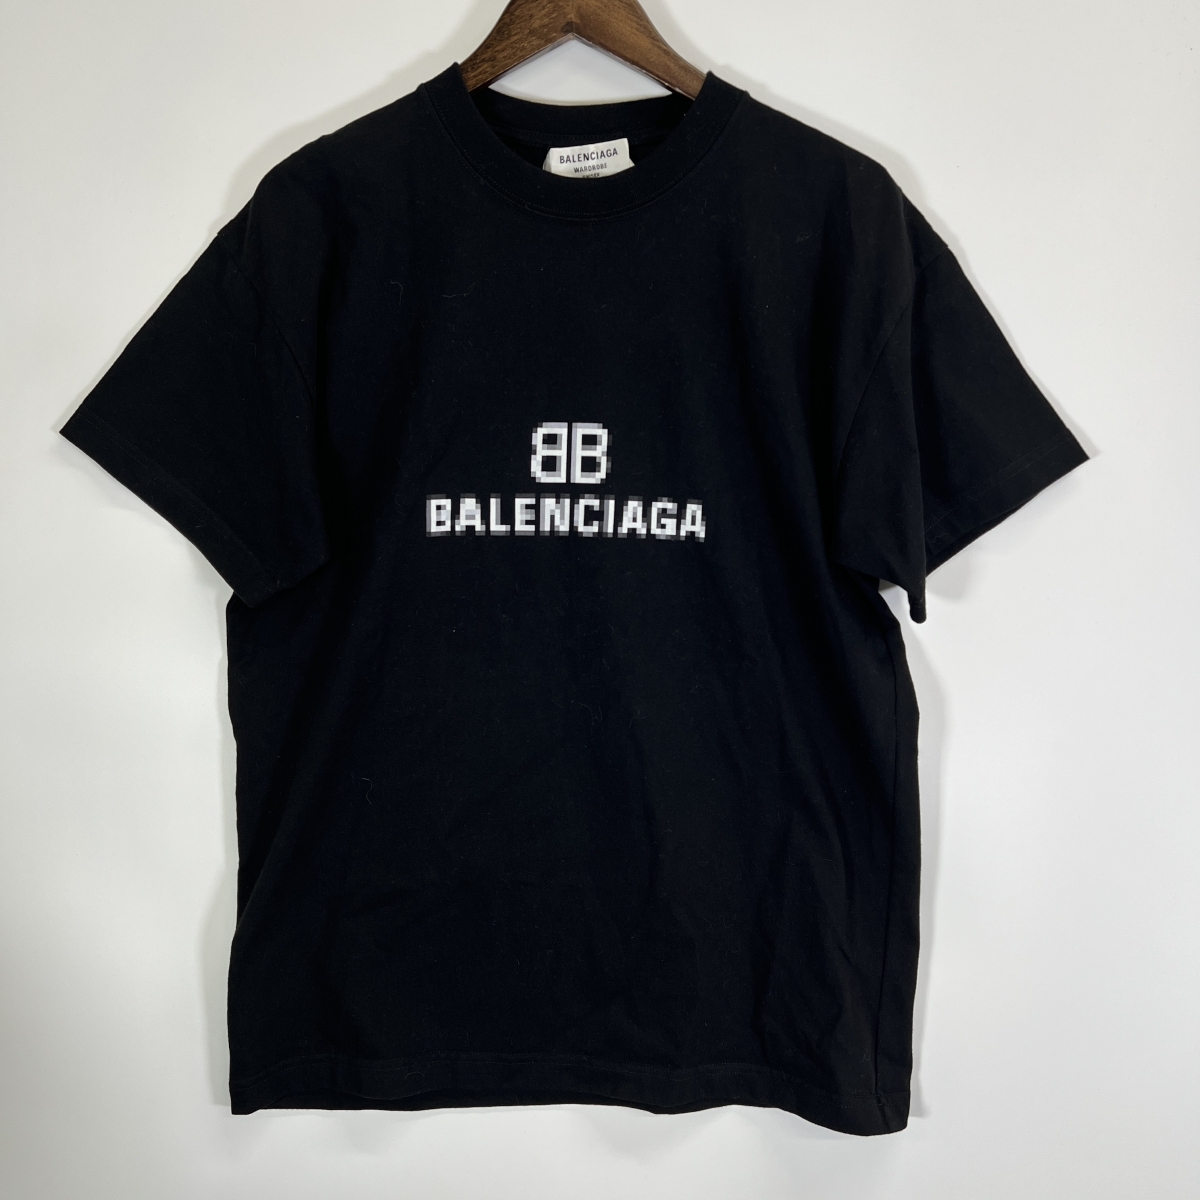 バレンシアガの21SS ブラック ピクセル ロゴTシャツ 612966の買取実績です。